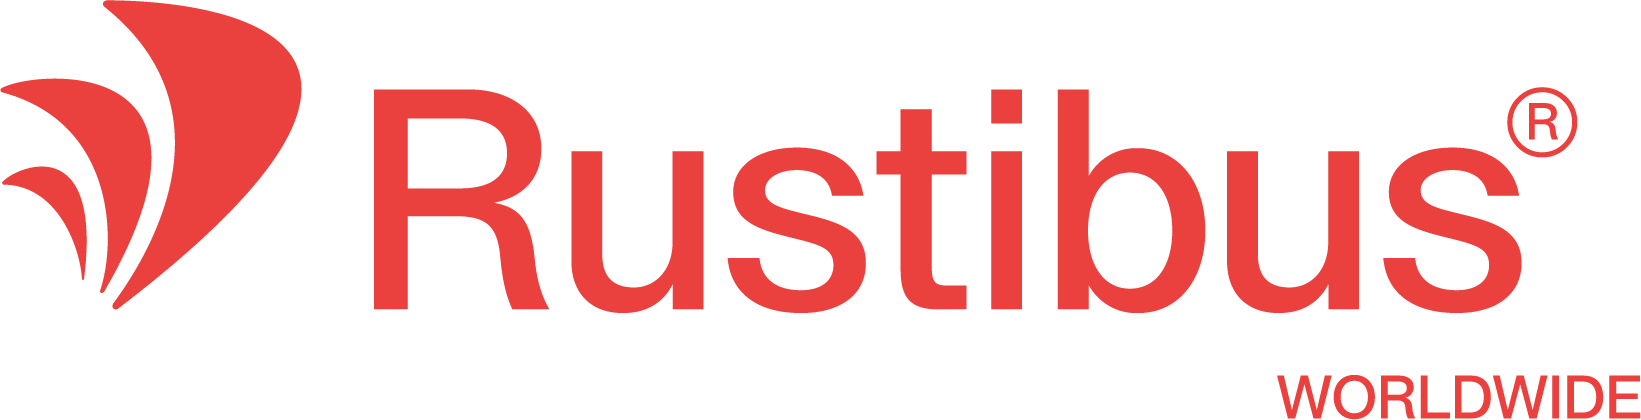 Rustibus Worldwide - Lyseste rød@4x